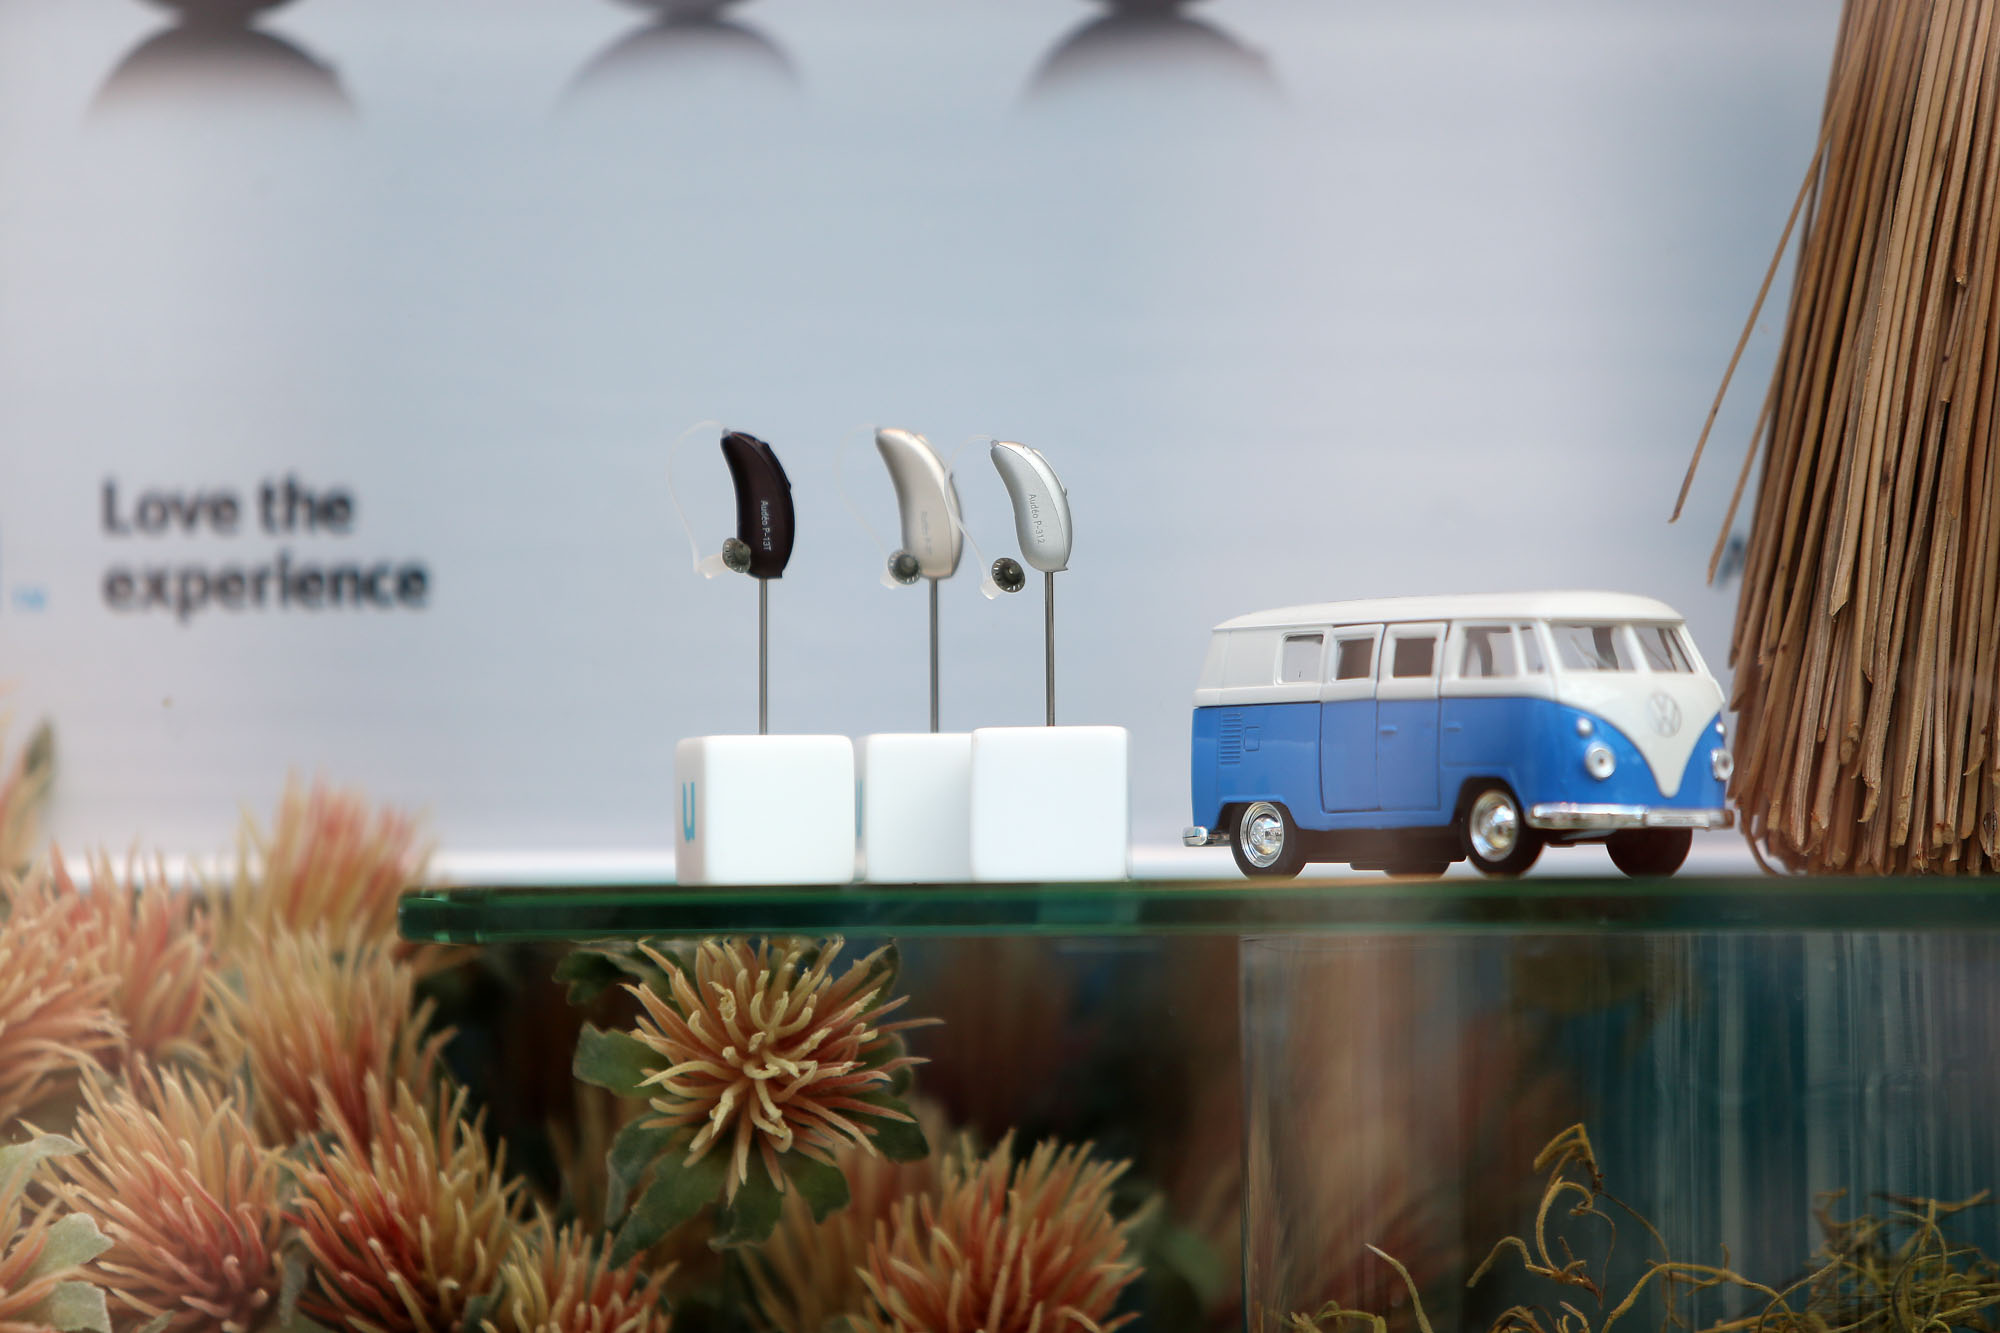 Modellauto VW Bus neben modernen Hörsystemen